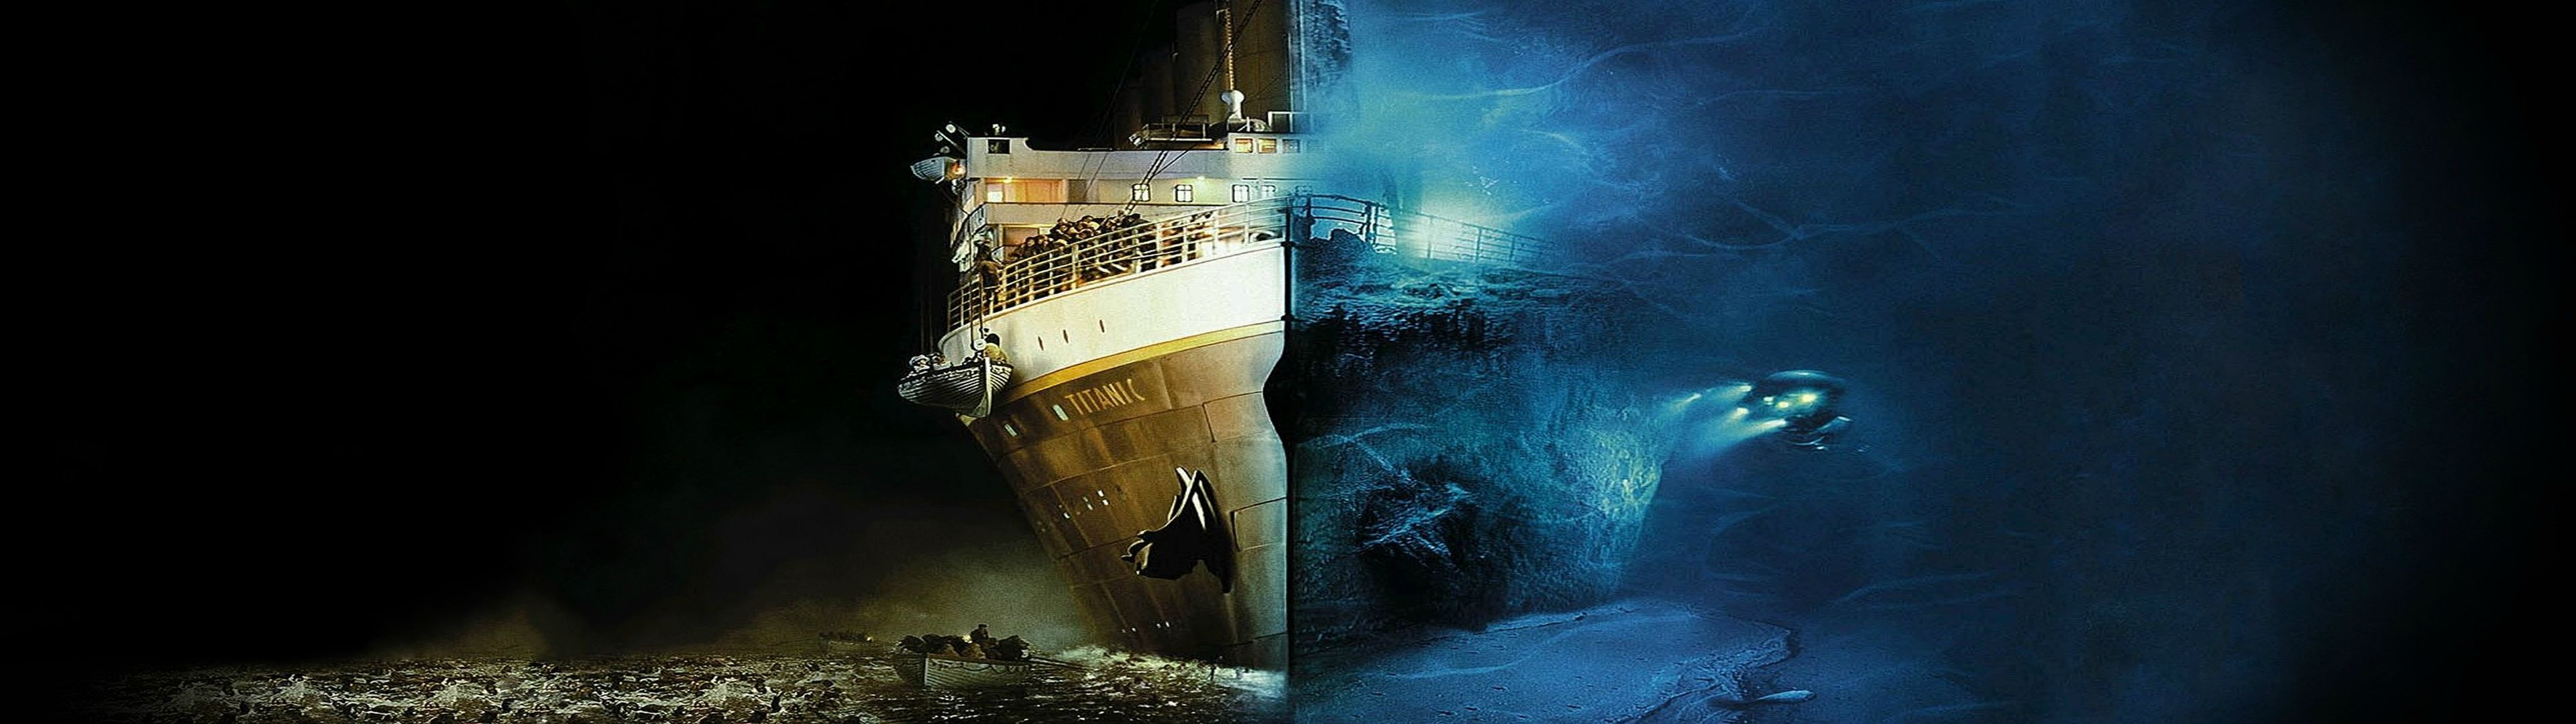 fond d'écran double moniteur,navire,véhicule,motomarine,bateau fantôme,plate forme pétrolière